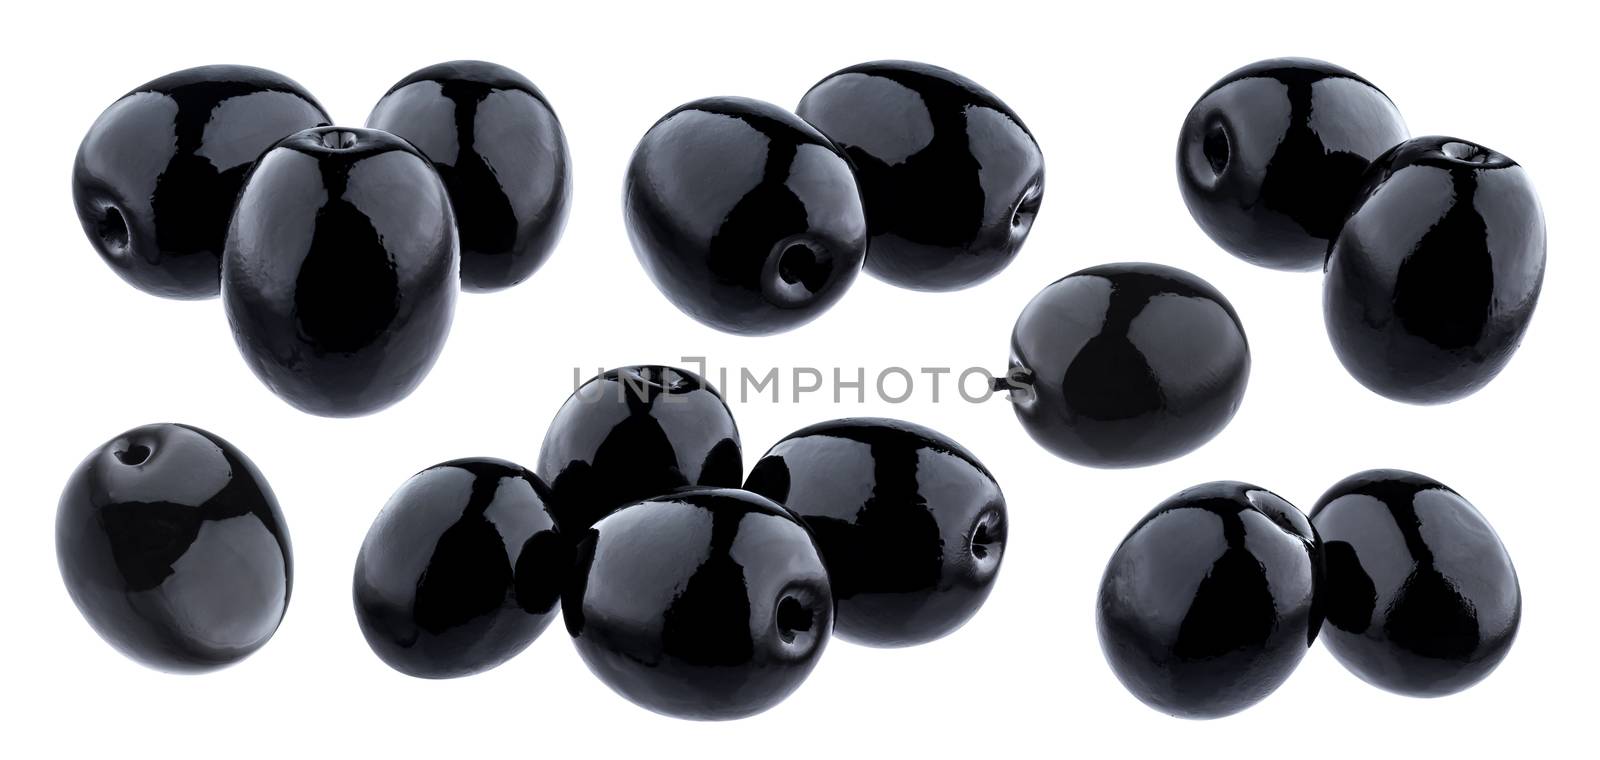 Black olives isolated on white background by xamtiw